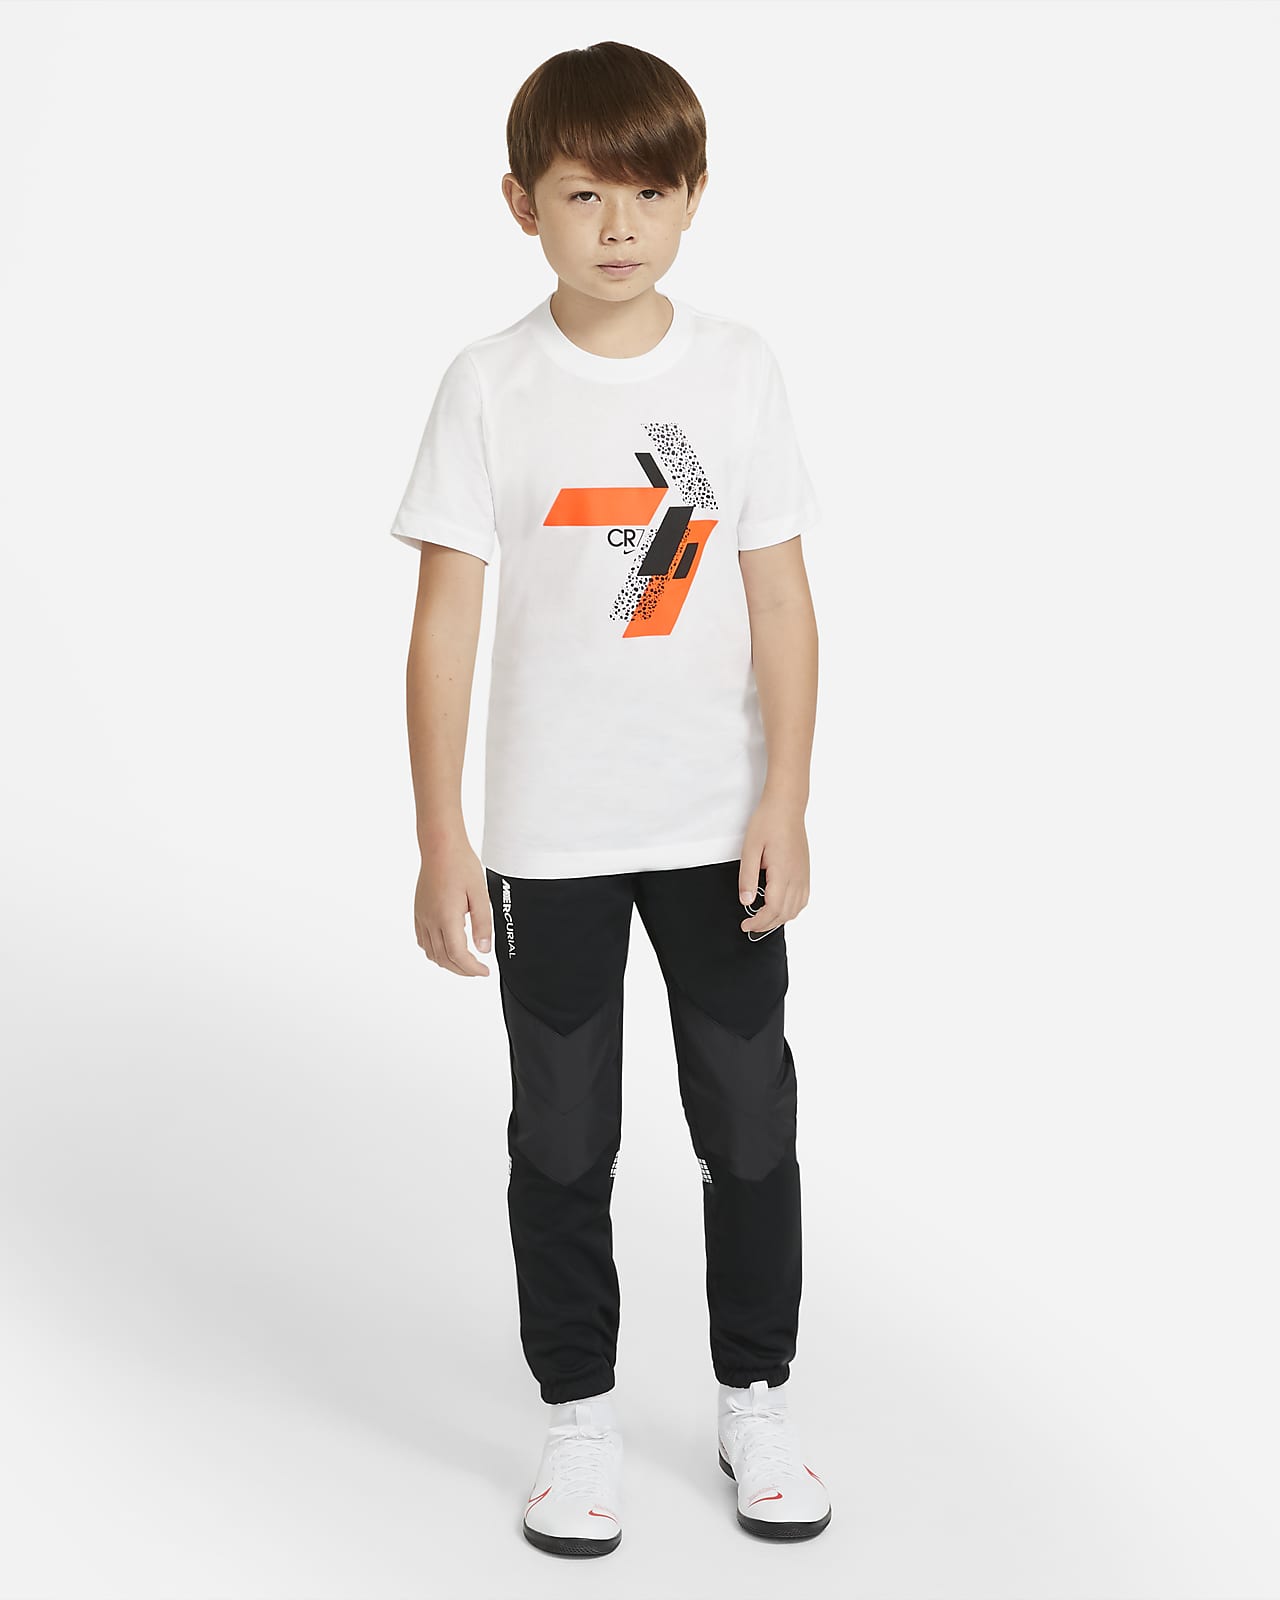 Nike公式 Cr7 ジュニア サッカー Tシャツ オンラインストア 通販サイト